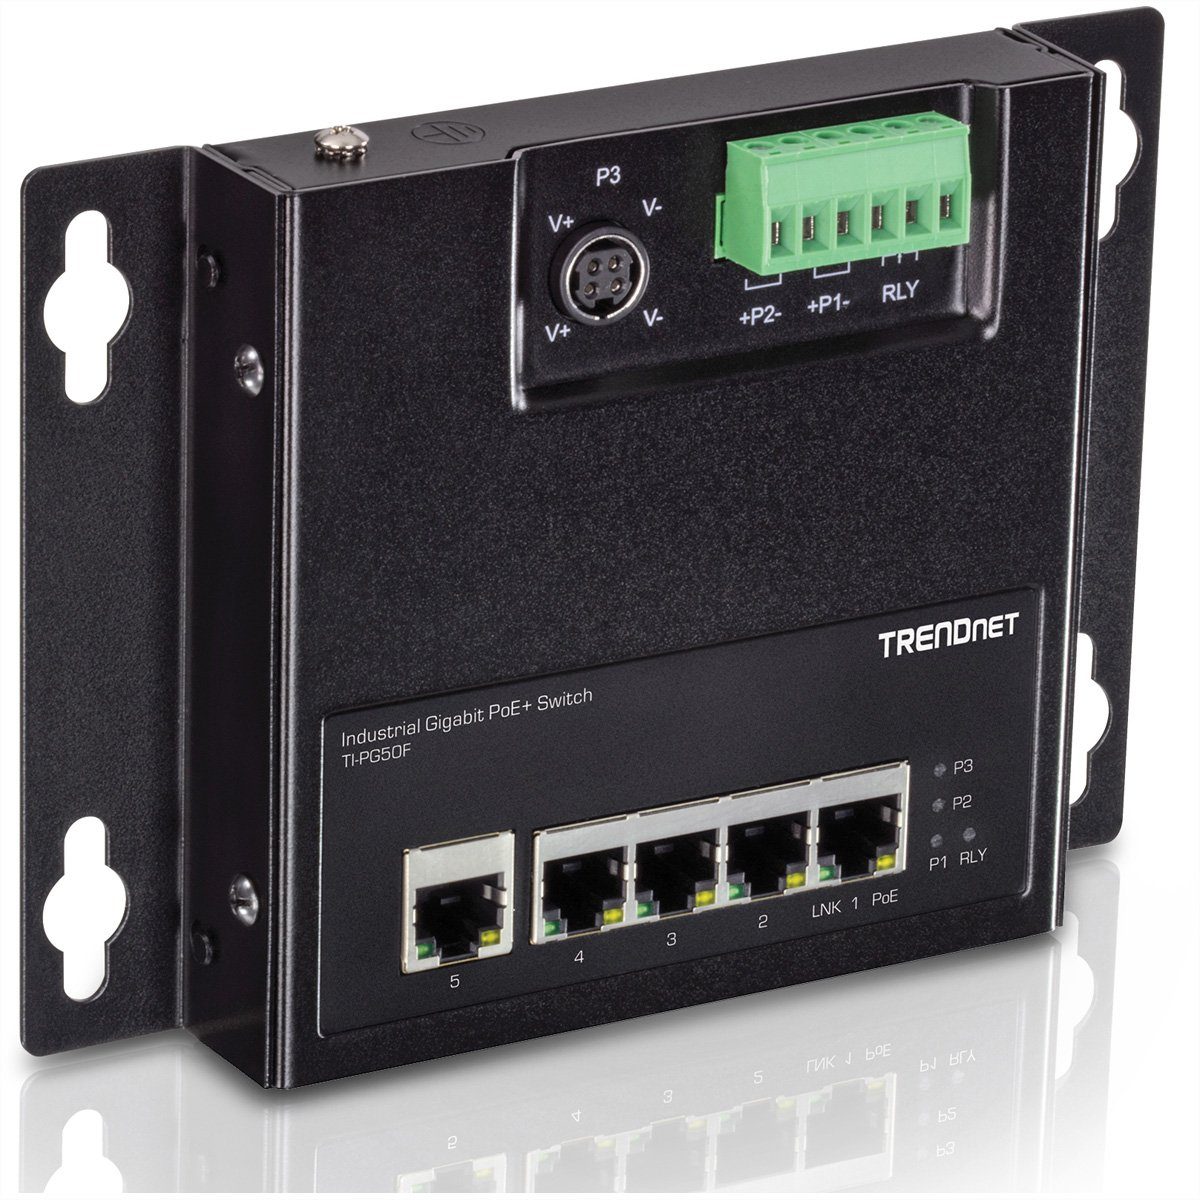 Trendnet TI-PG50F 5-Port Industrial PoE+ Gigabit Front Access Switch Netzwerk-Switch (wandmontierbar) | Switch